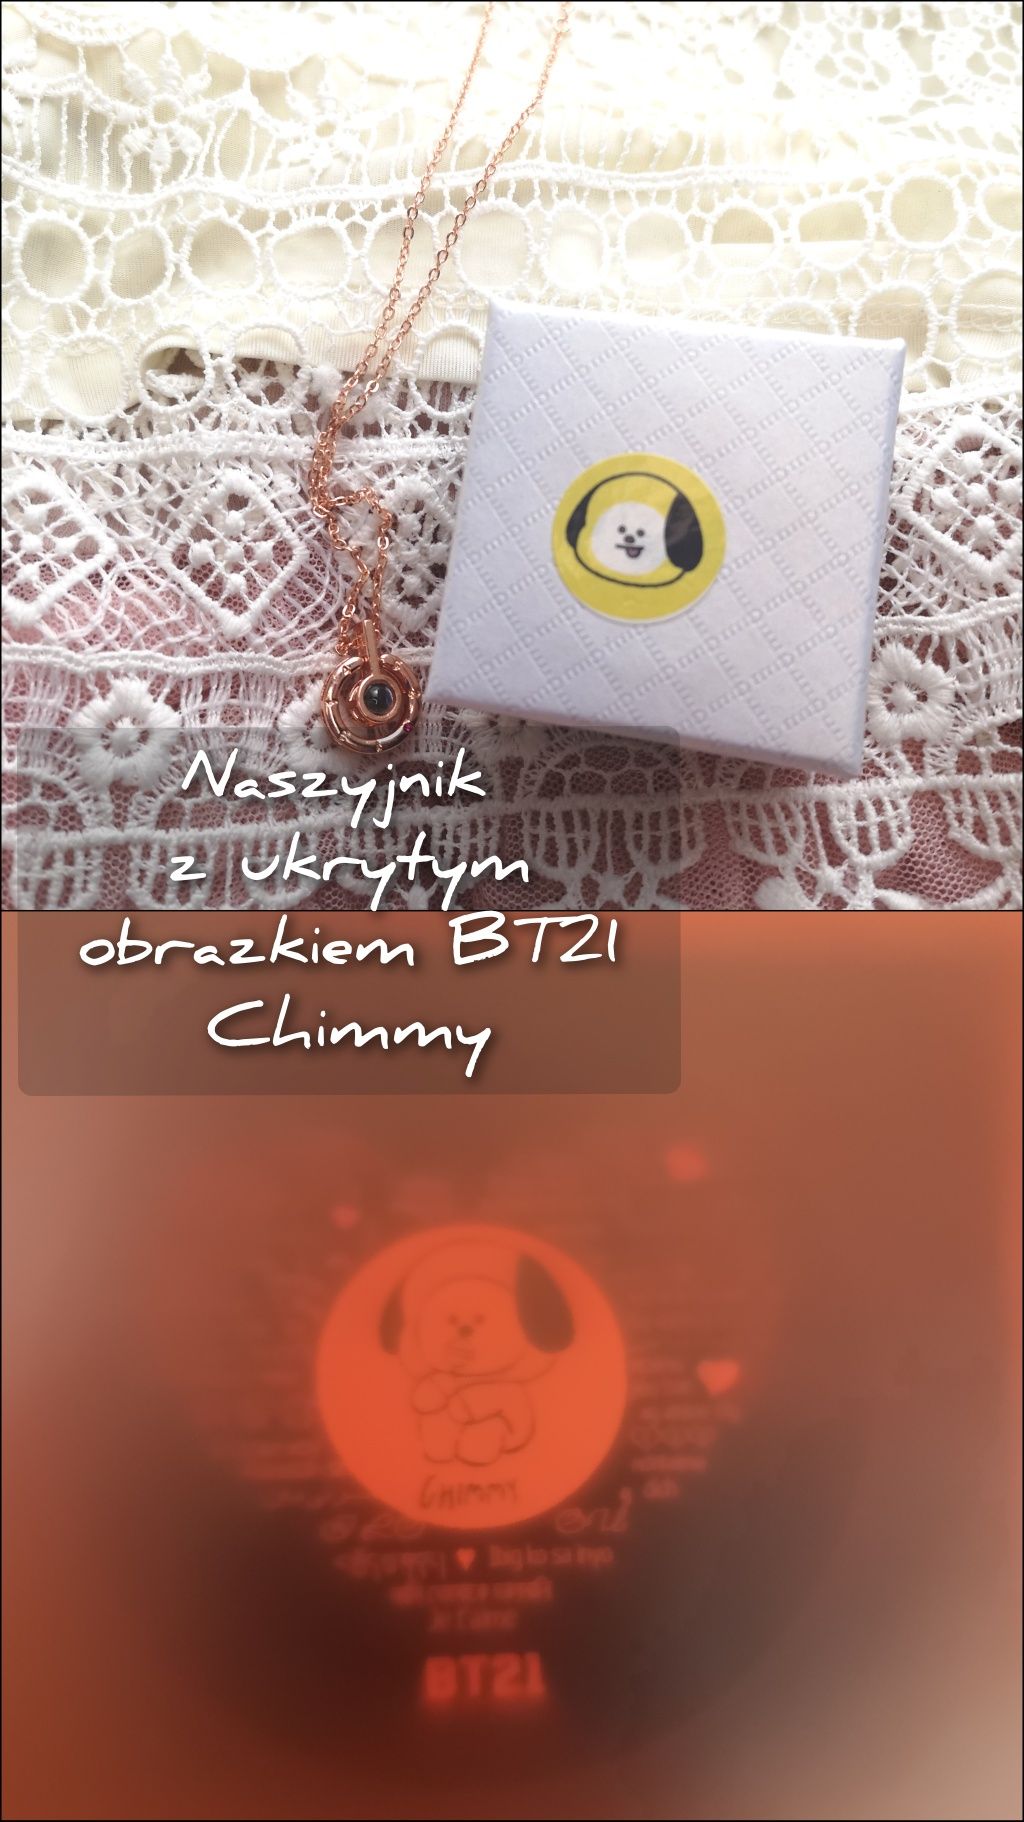 Nowy naszyjnik z ukrytym obrazkiem Chimmy Jimin BT21 BTS